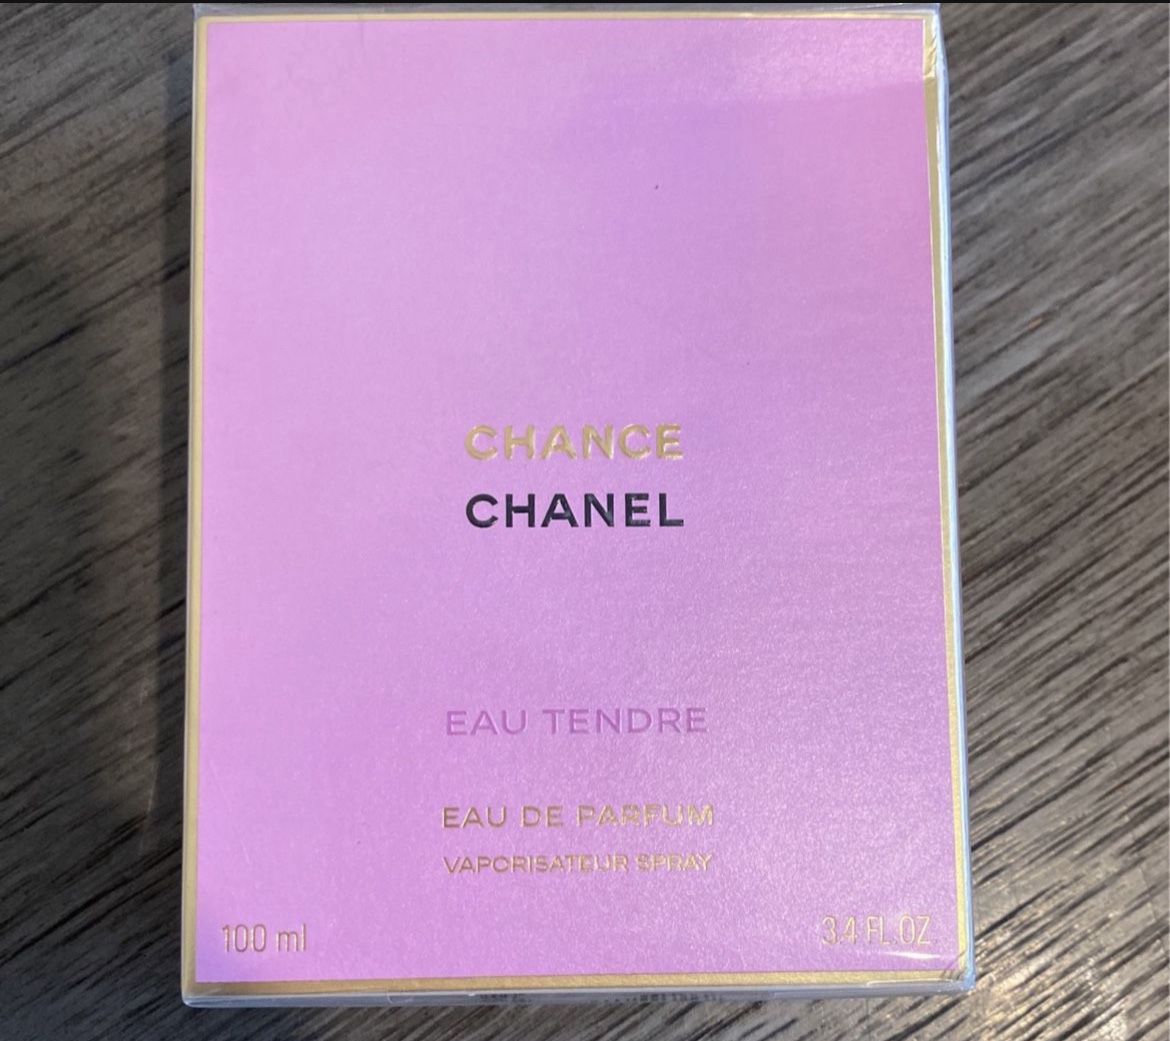 CHANEL CHANCE EAU TENDRE Eau de Parfum 3.4 for Sale in Portland, OR -  OfferUp